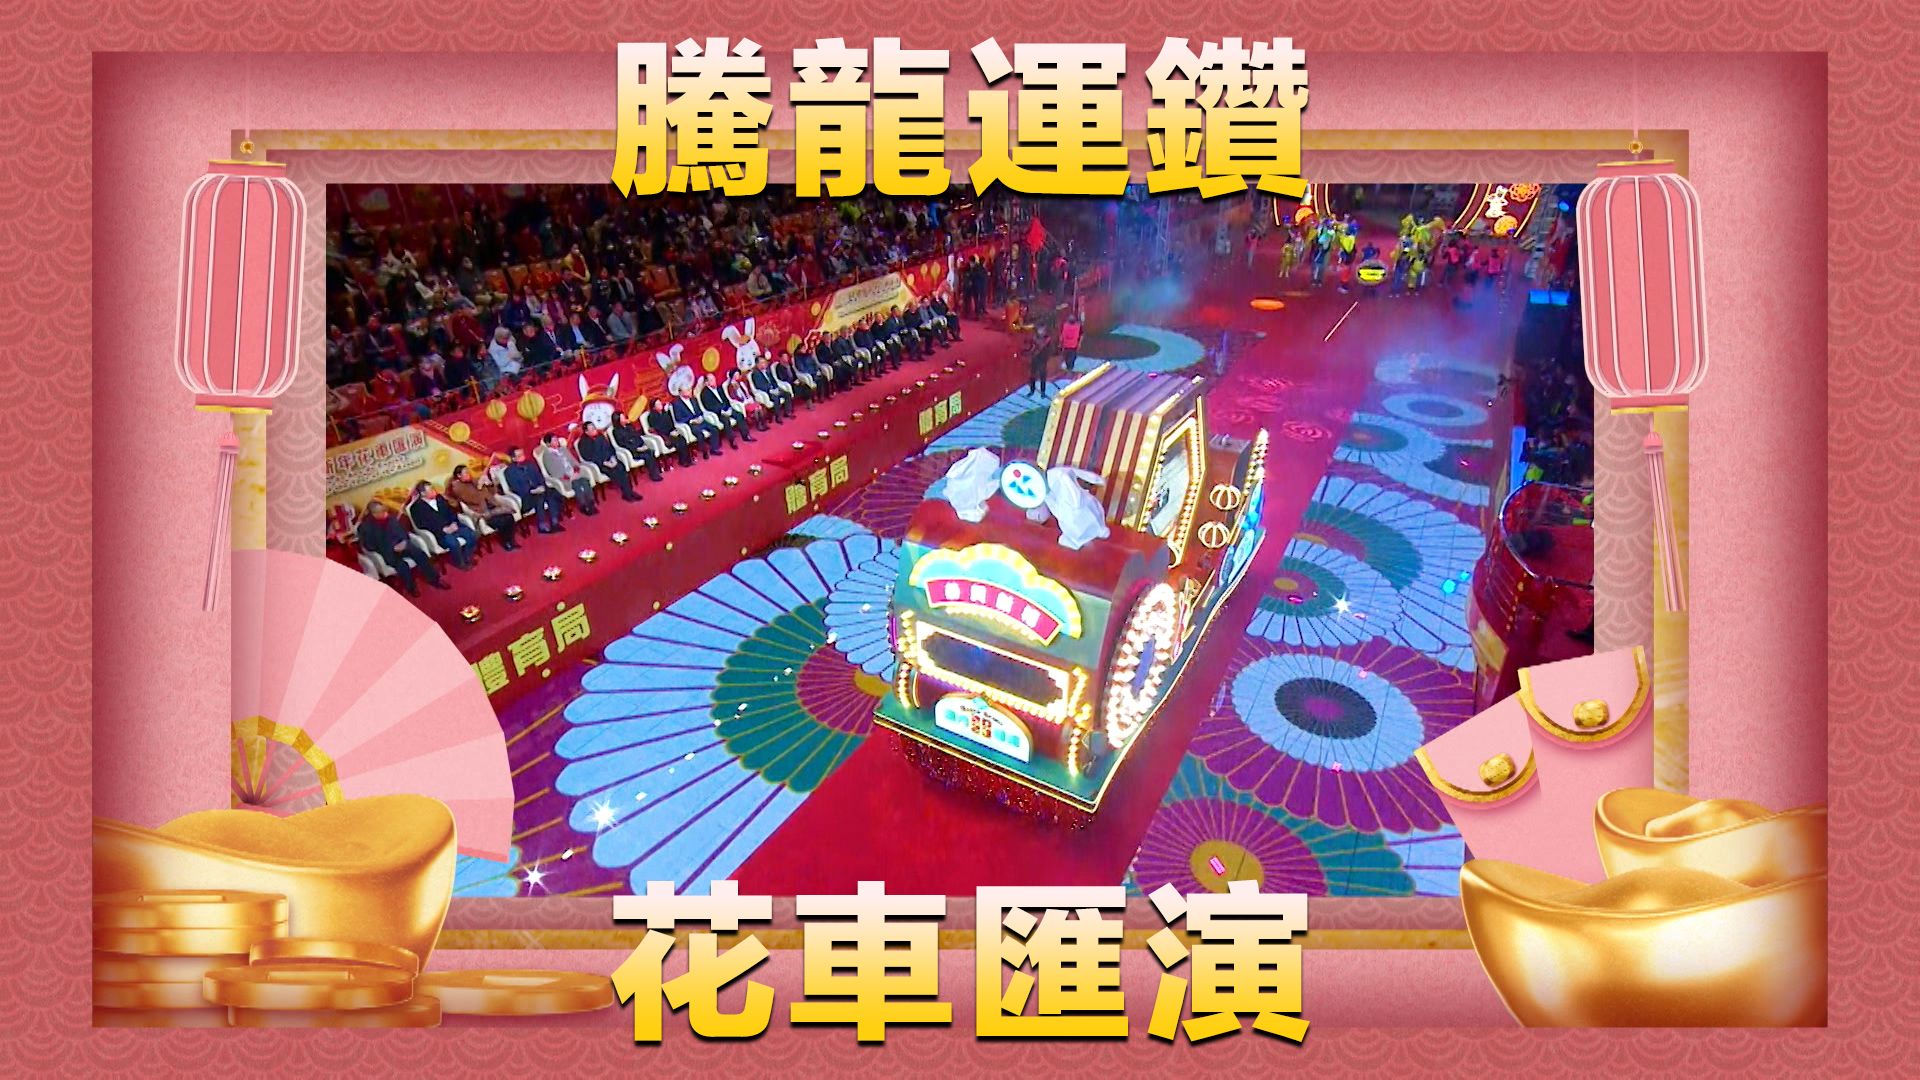 騰龍運鑽花車匯演-Parade For Celebration Of The Year Of The Dragon